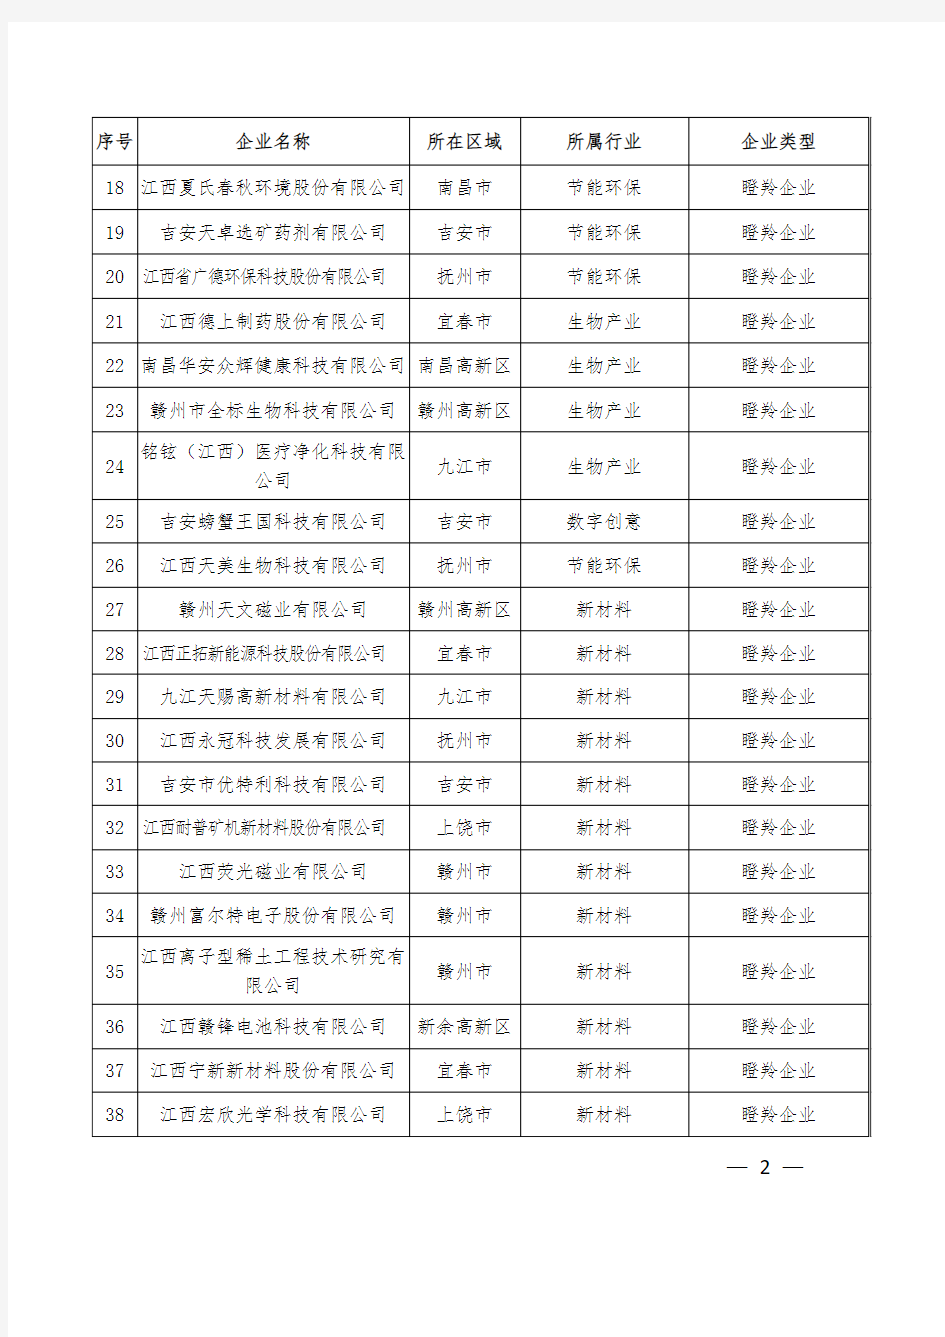 江西省2019年度独角兽(潜在、种子)和瞪羚(潜在)企业名单